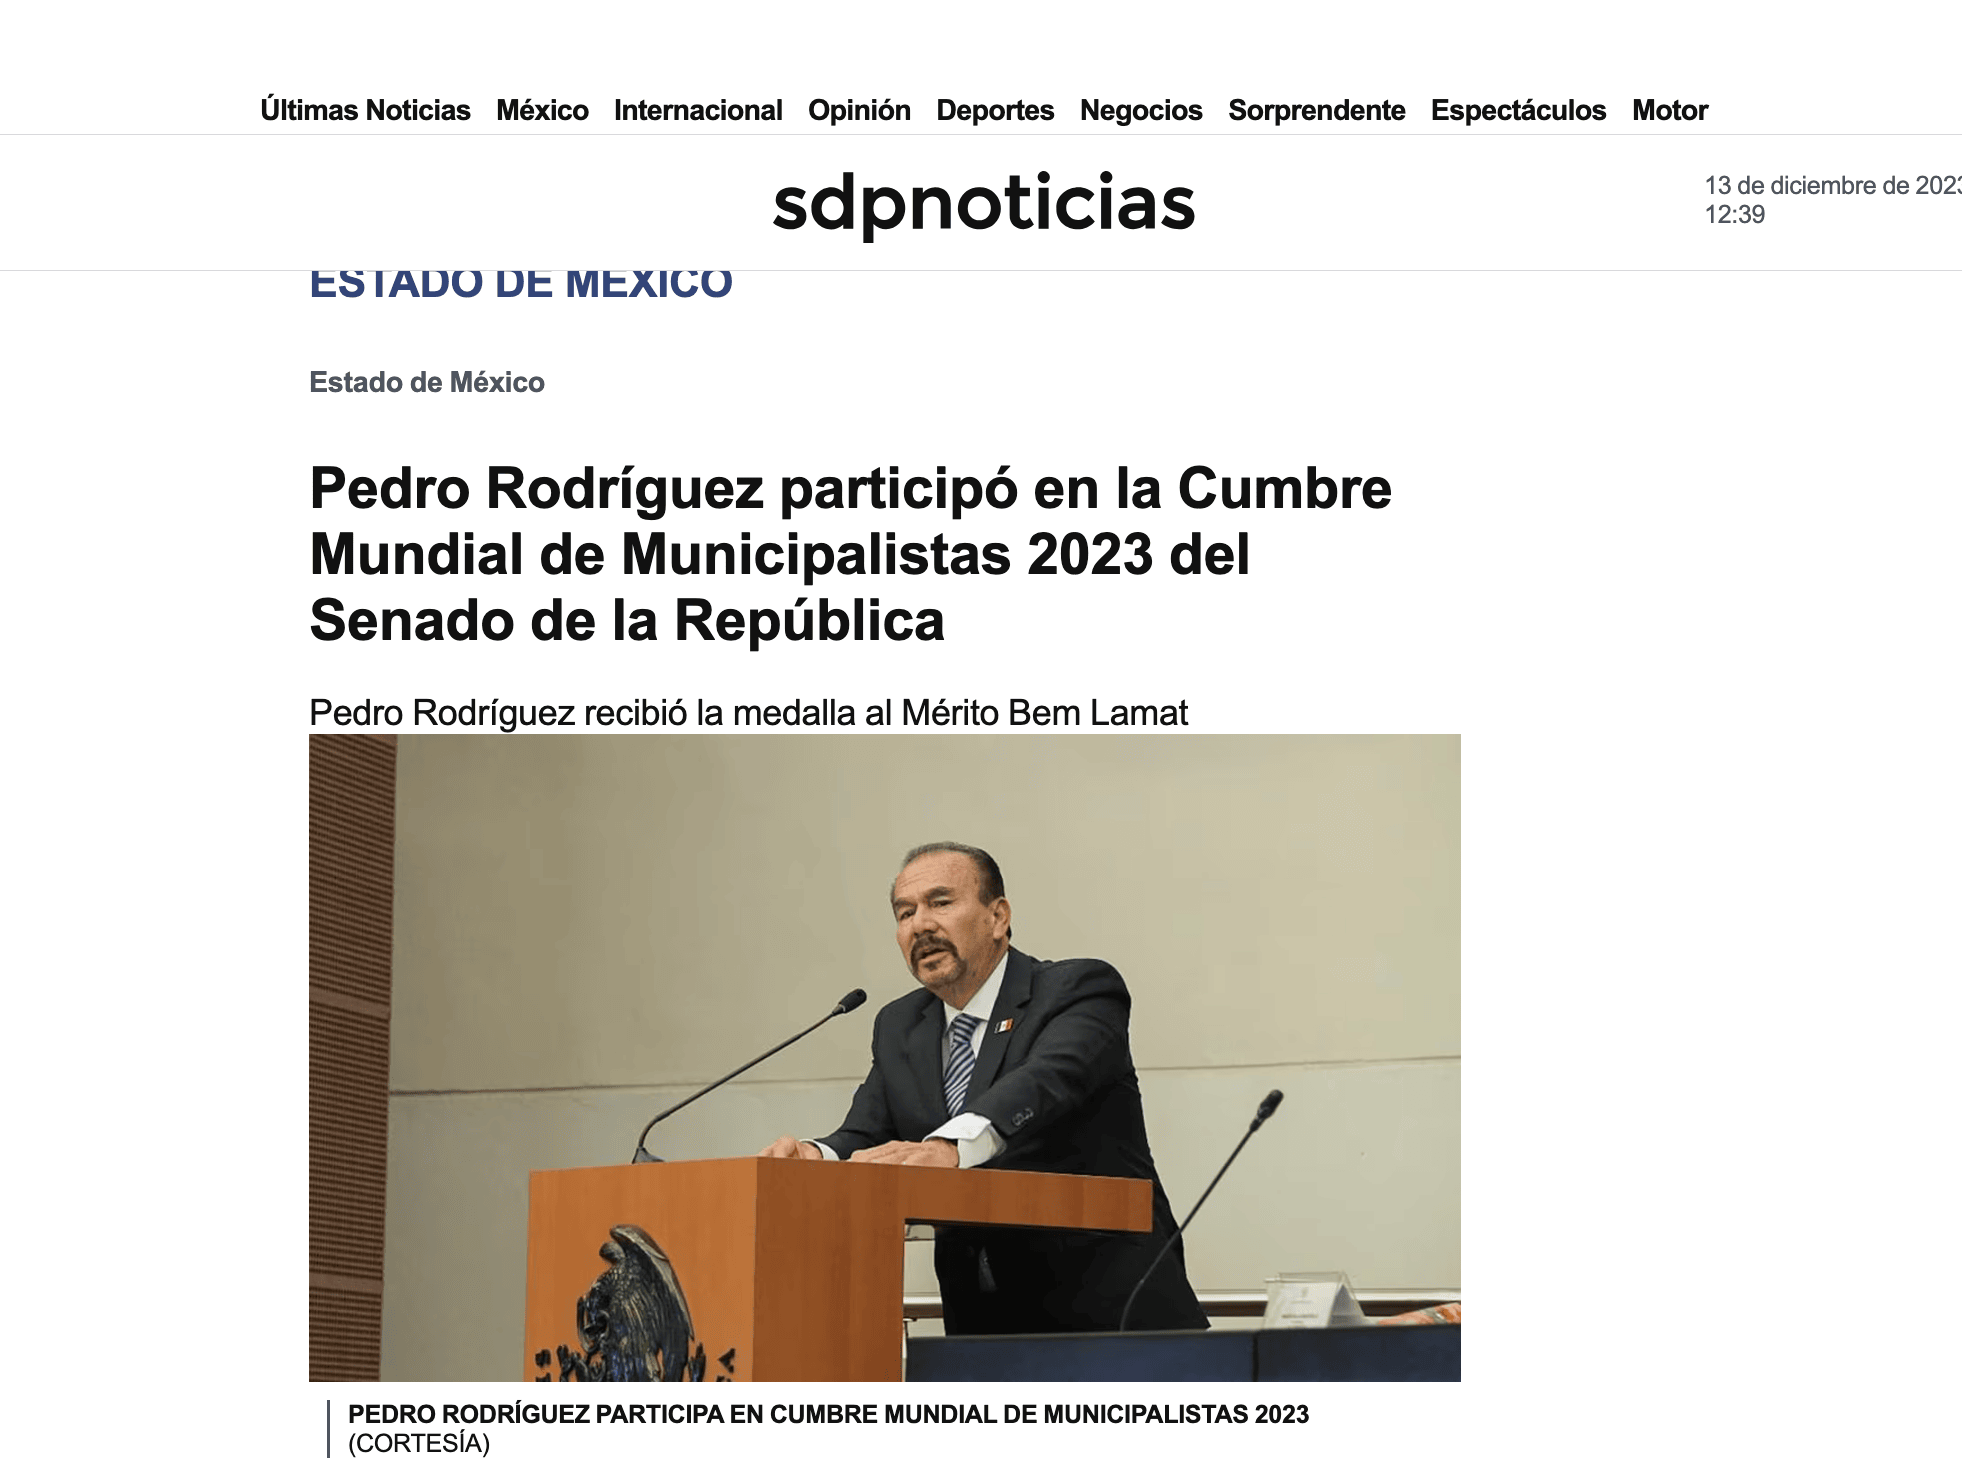 Pedro Rodríguez participó en la Cumbre Mundial de Municipalistas 2023 en el Senado de la República